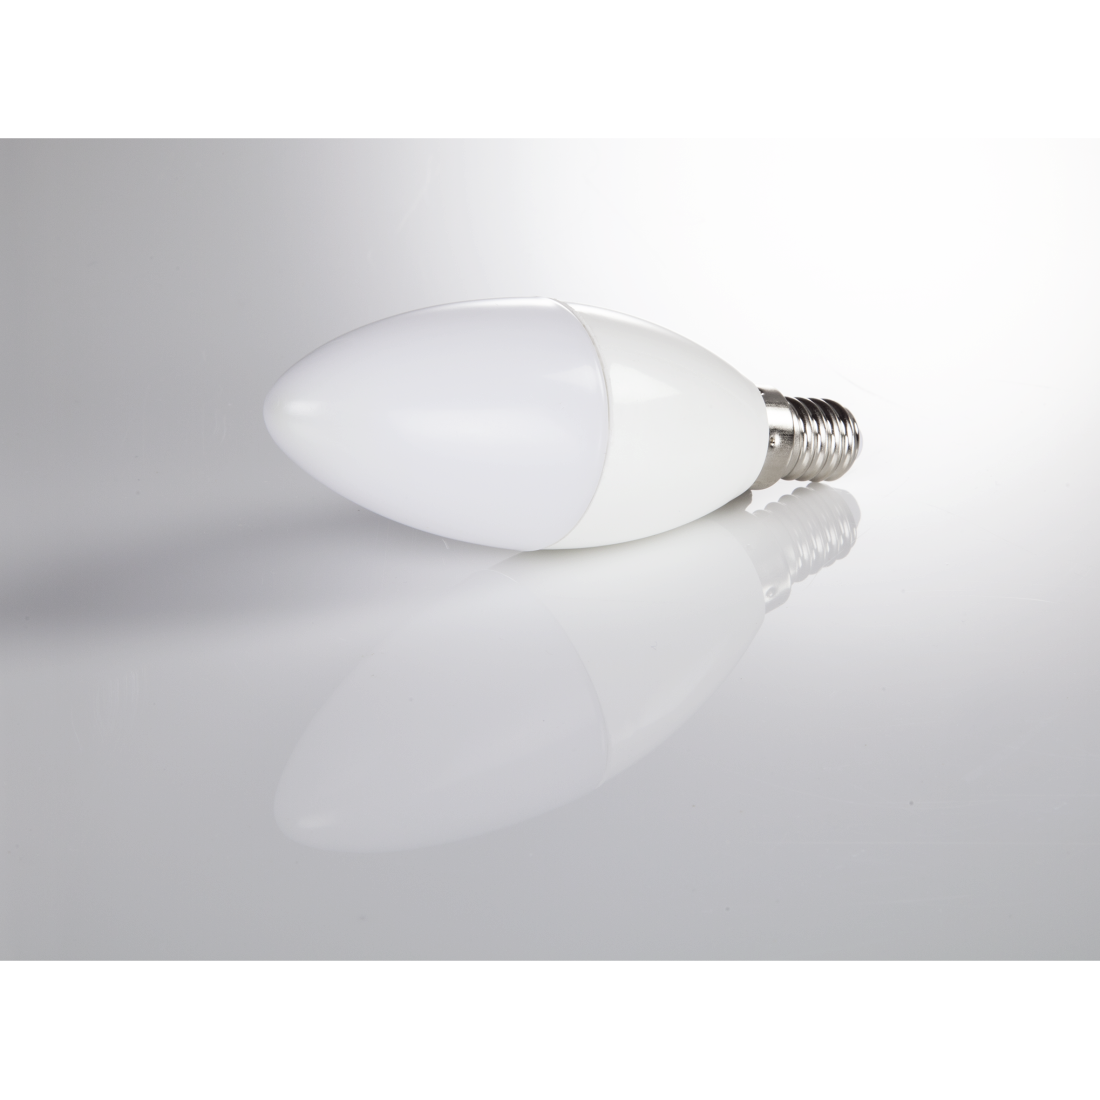 abx3 Druckfähige Abbildung 3 - Xavax, LED-Lampe, E14, 470lm ersetzt 40W, Kerzenlampe, Neutralweiß